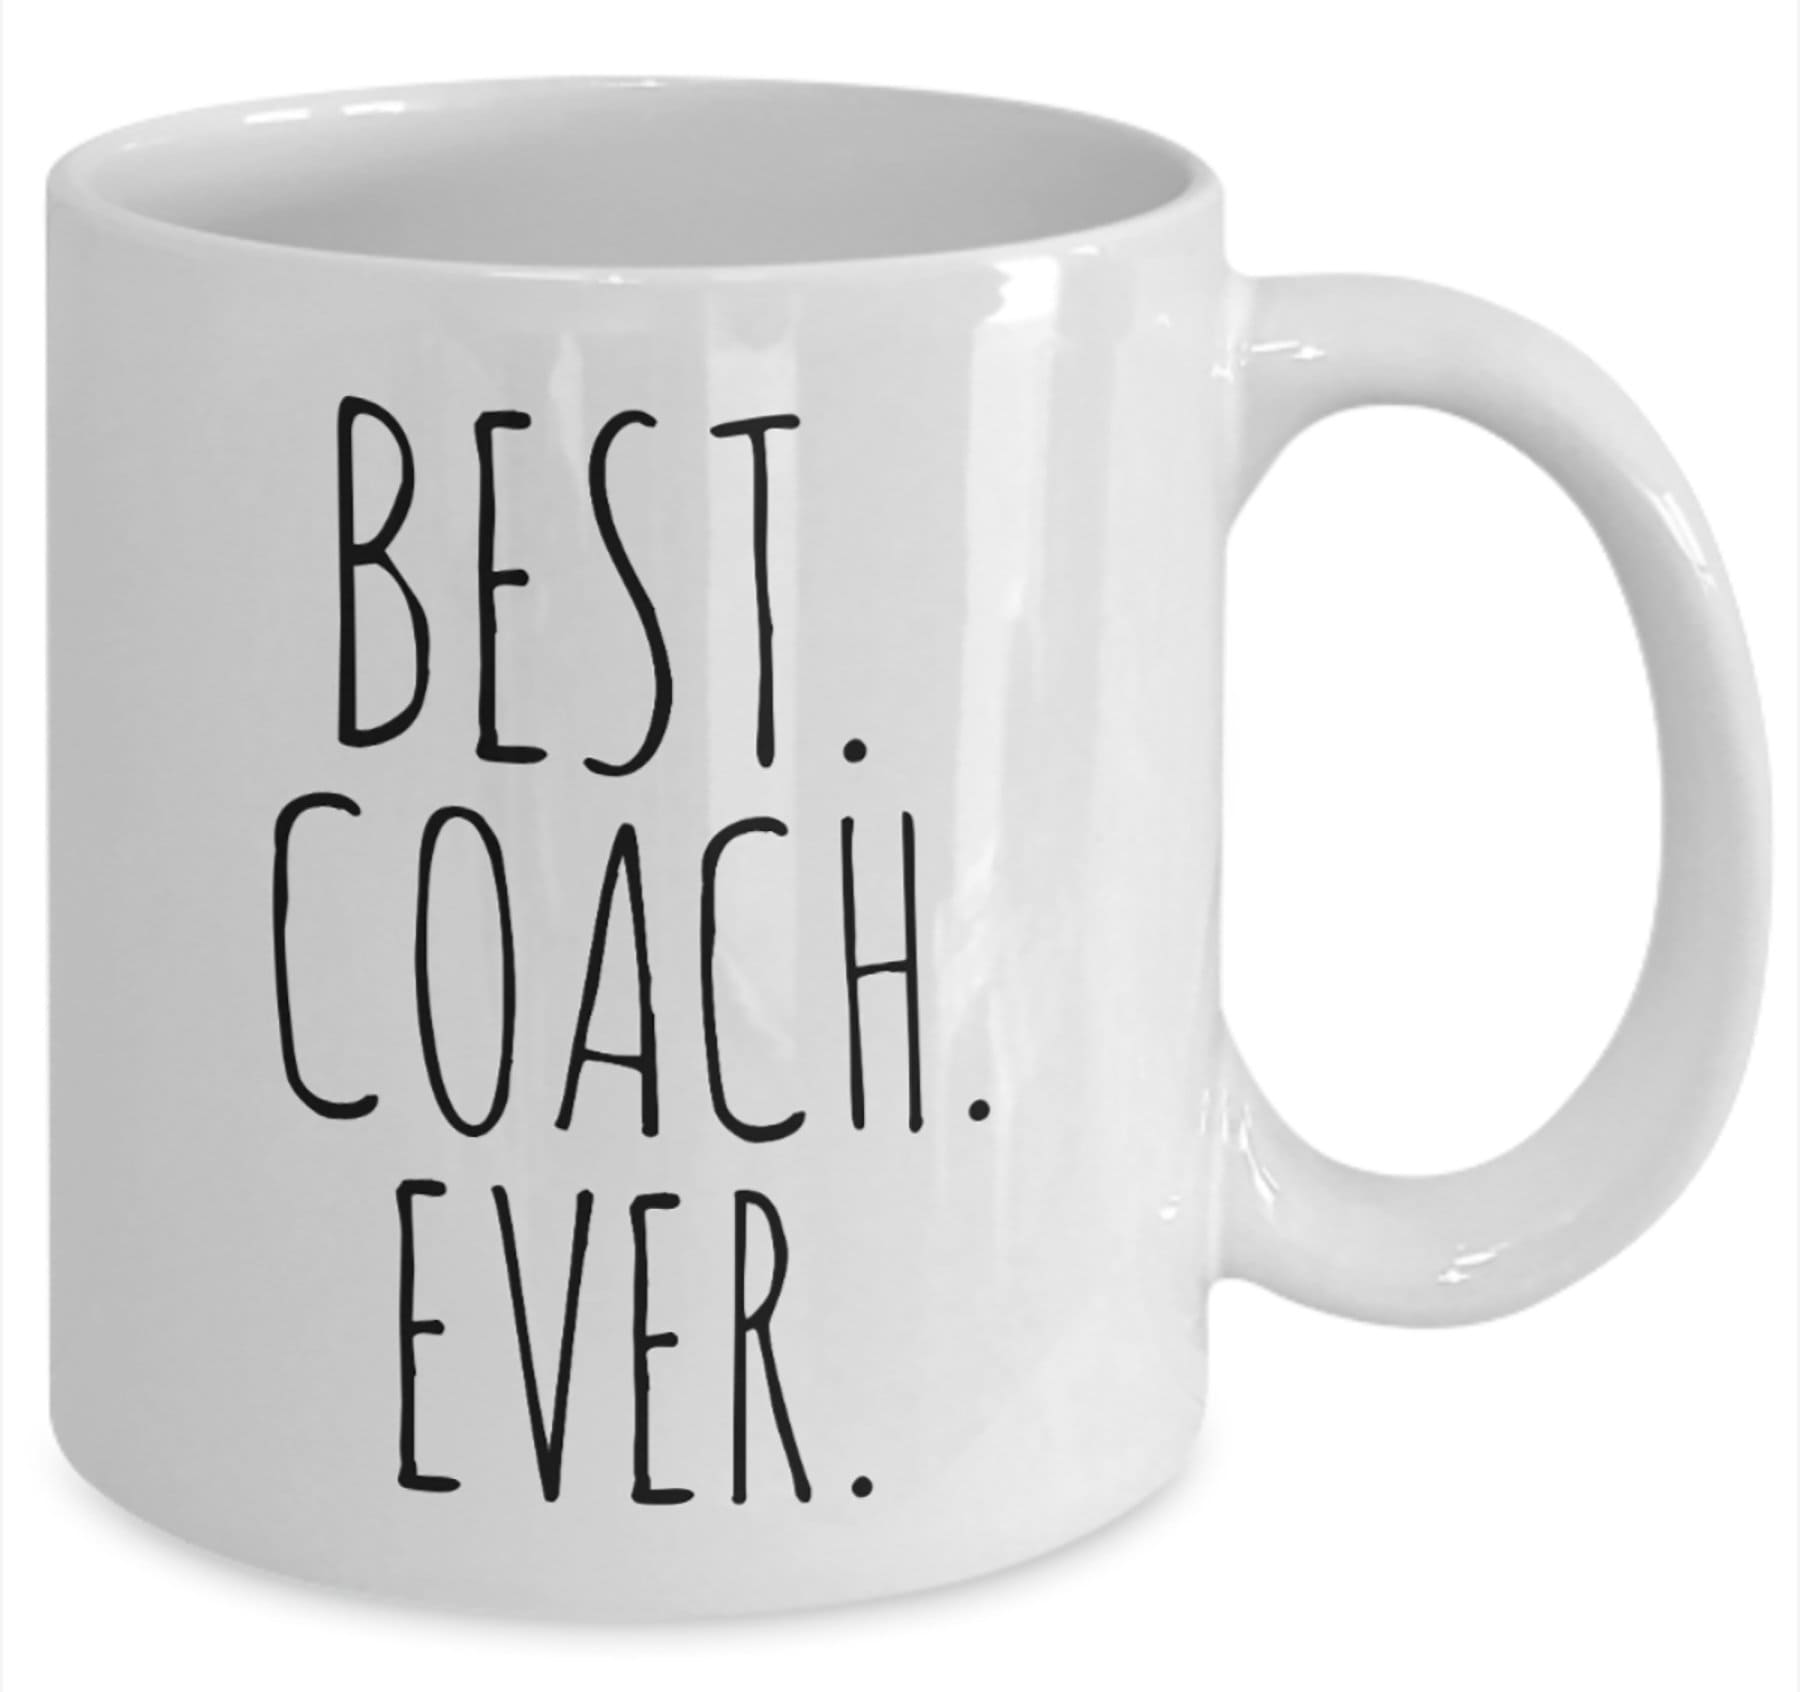 Cadeau idéal pour coach ever, meilleur coach ever, meilleur coach ever, meilleur  coach ever, cadeau pour coach ever, tasse Best Coach Ever, cadeau pour coach  : : Maison